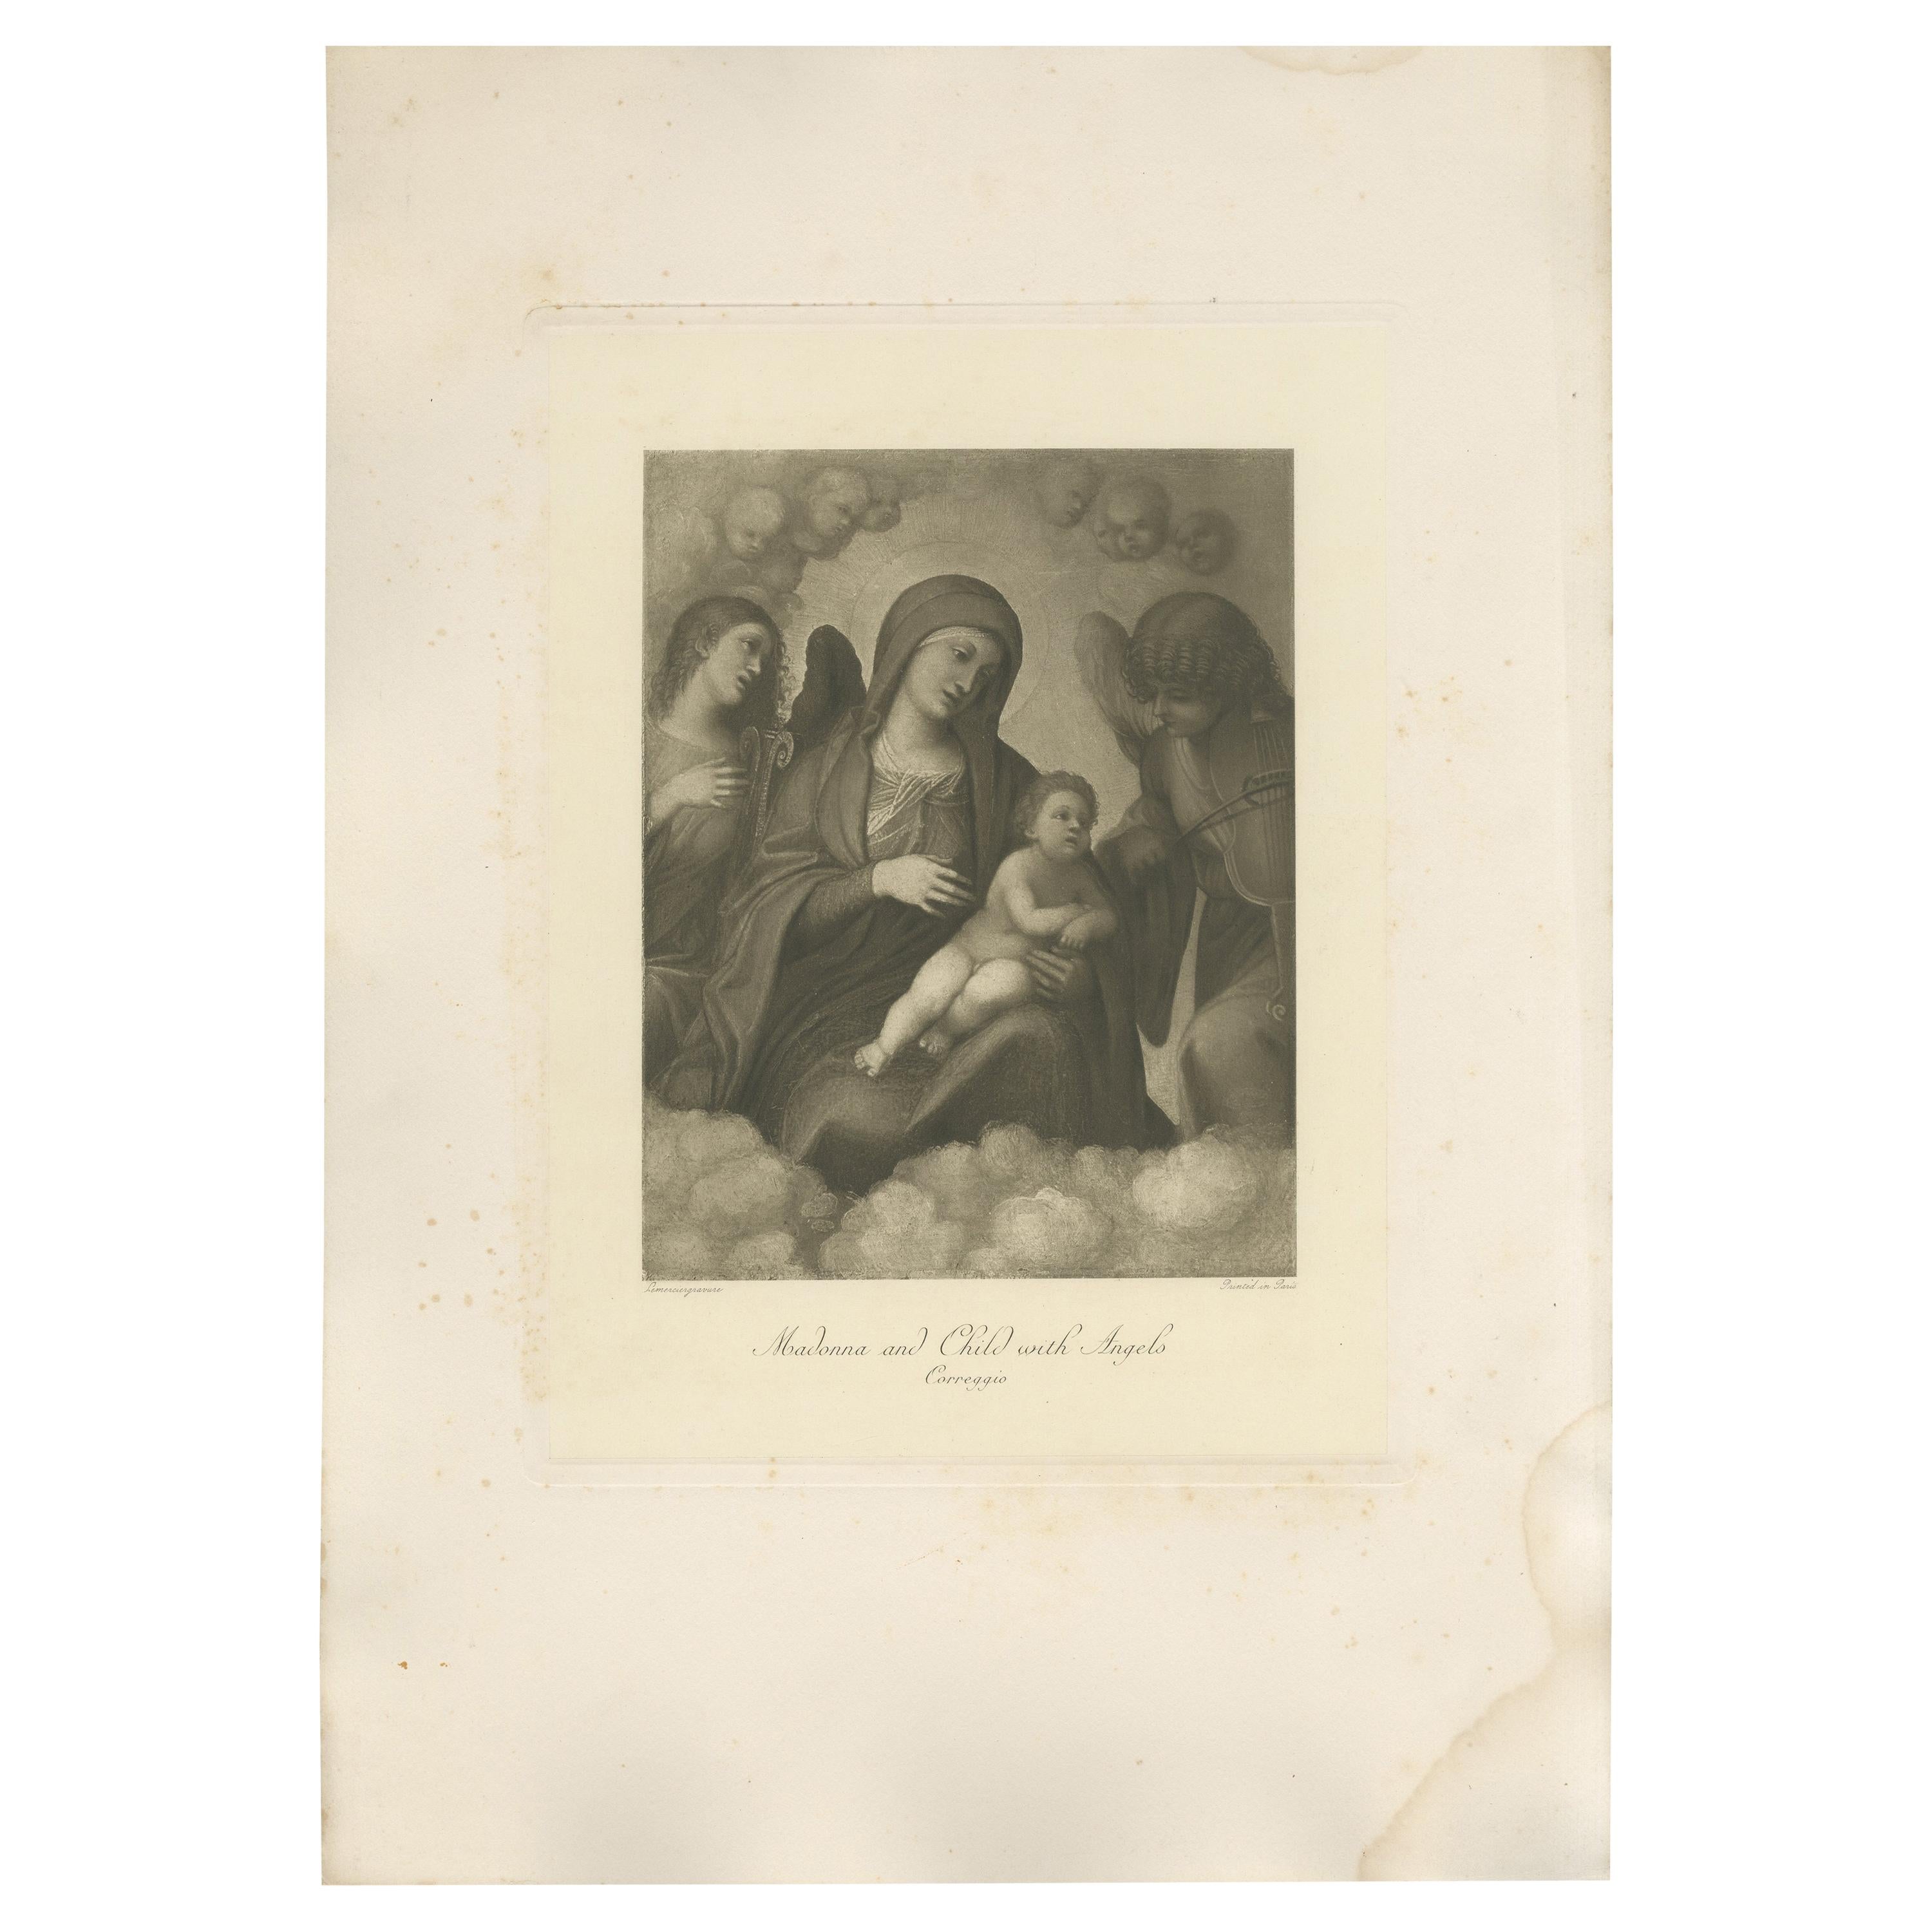 Impression ancienne de « Madonna and Child with Angels » (Madonna et enfant avec des anges) réalisée d'après Correggio, vers 1890